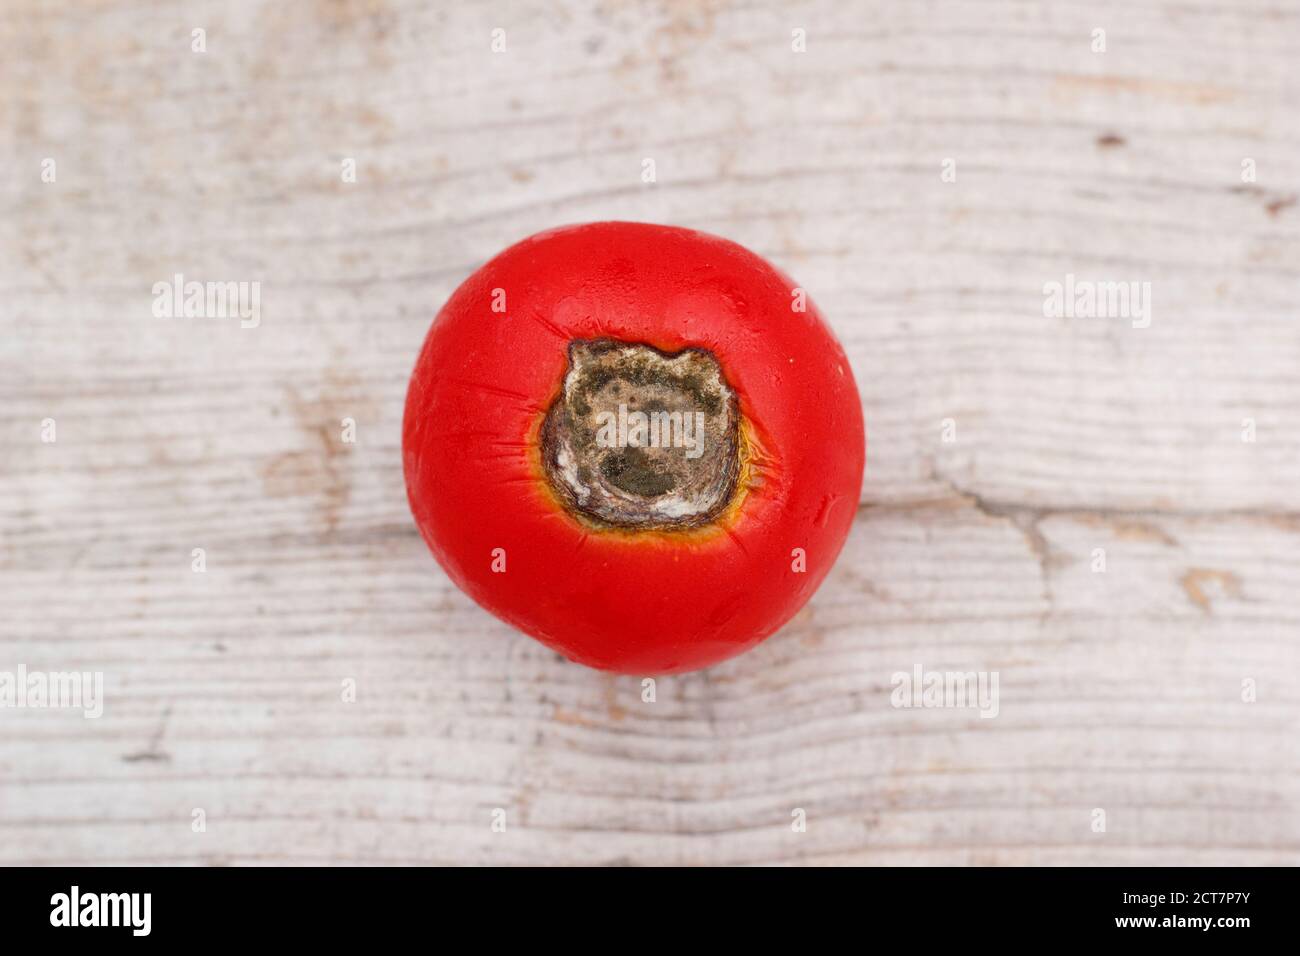 Pomodori coltivati in casa con fine marciume fiorito causato dalla mancanza di calcio e problemi di annaffiatura associati. Solanum lycopersicum "Alicante". Foto Stock